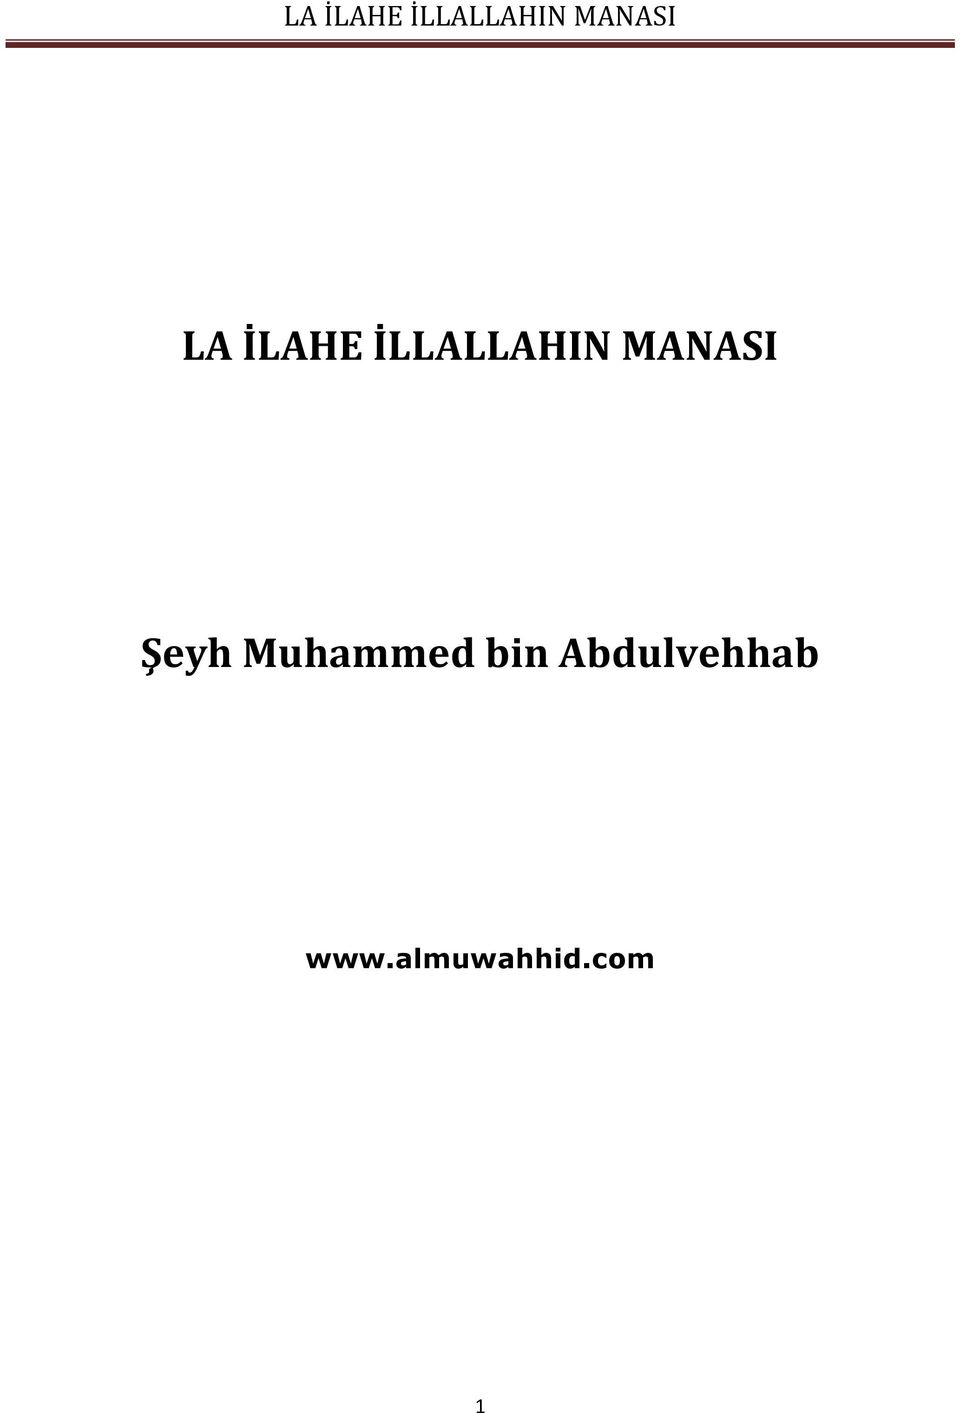 Muhammed bin